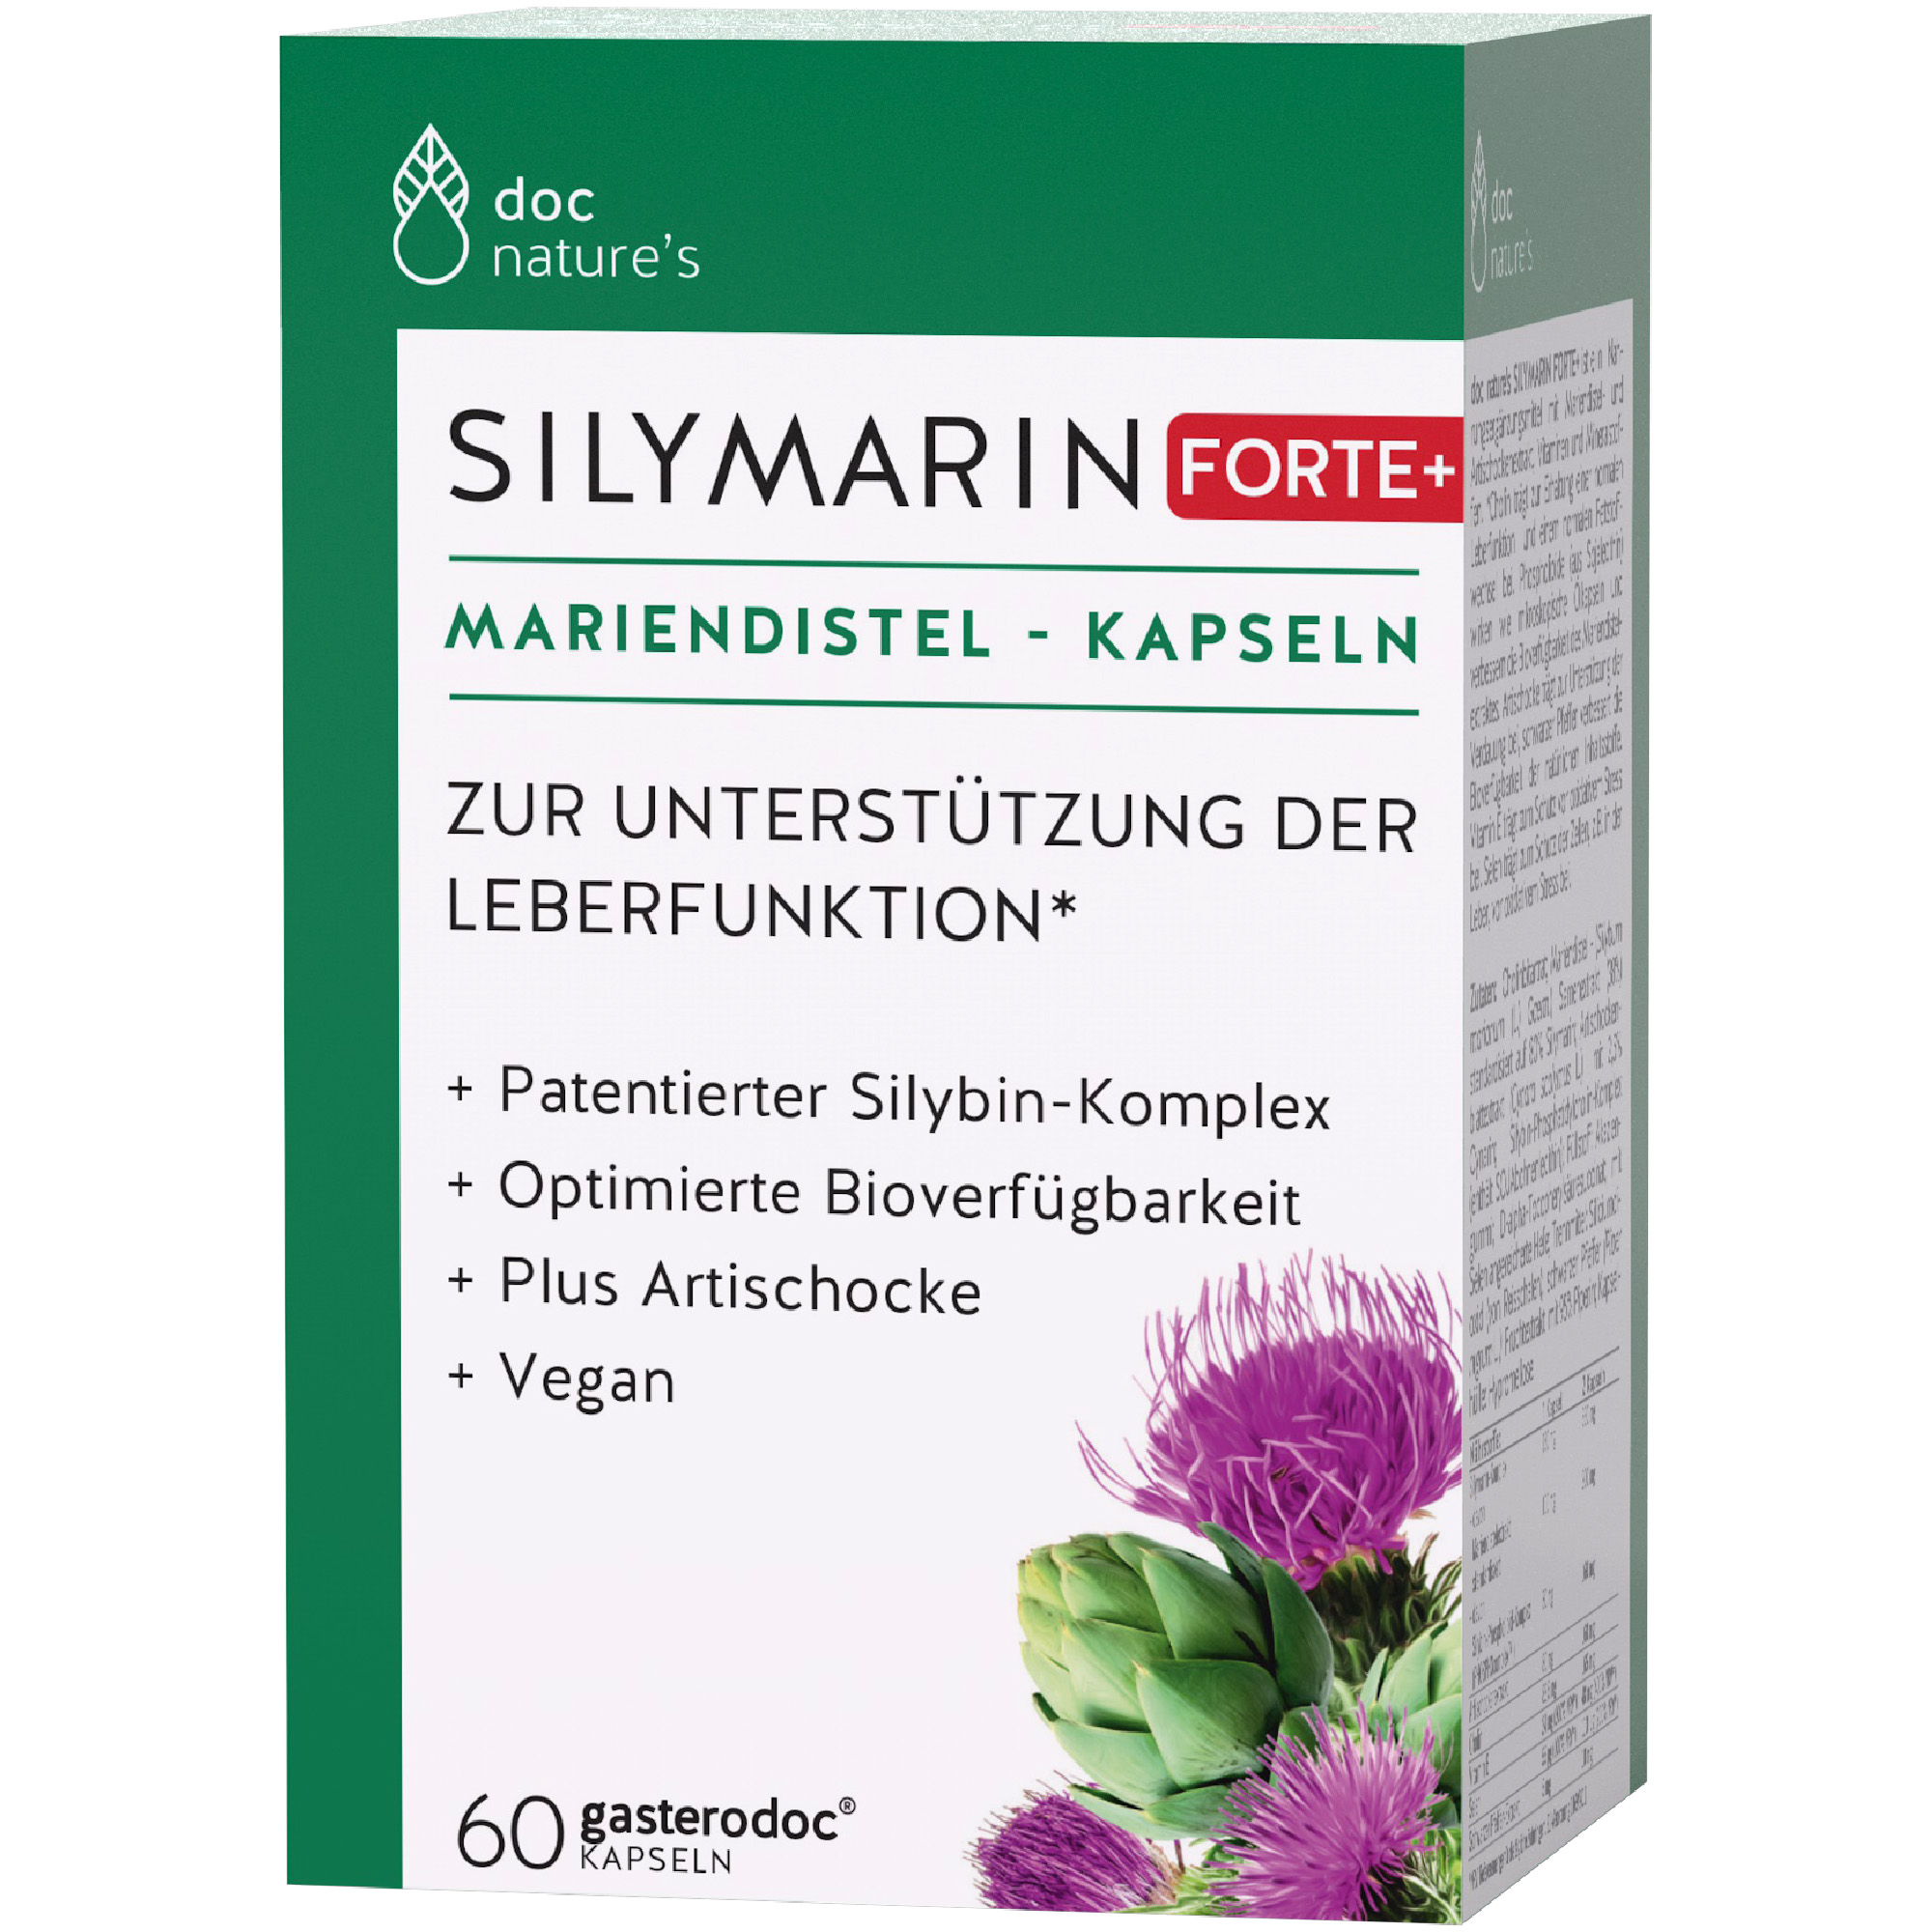 doc nature‘s SILYMARIN FORTE+ Mariendistel-Kapseln